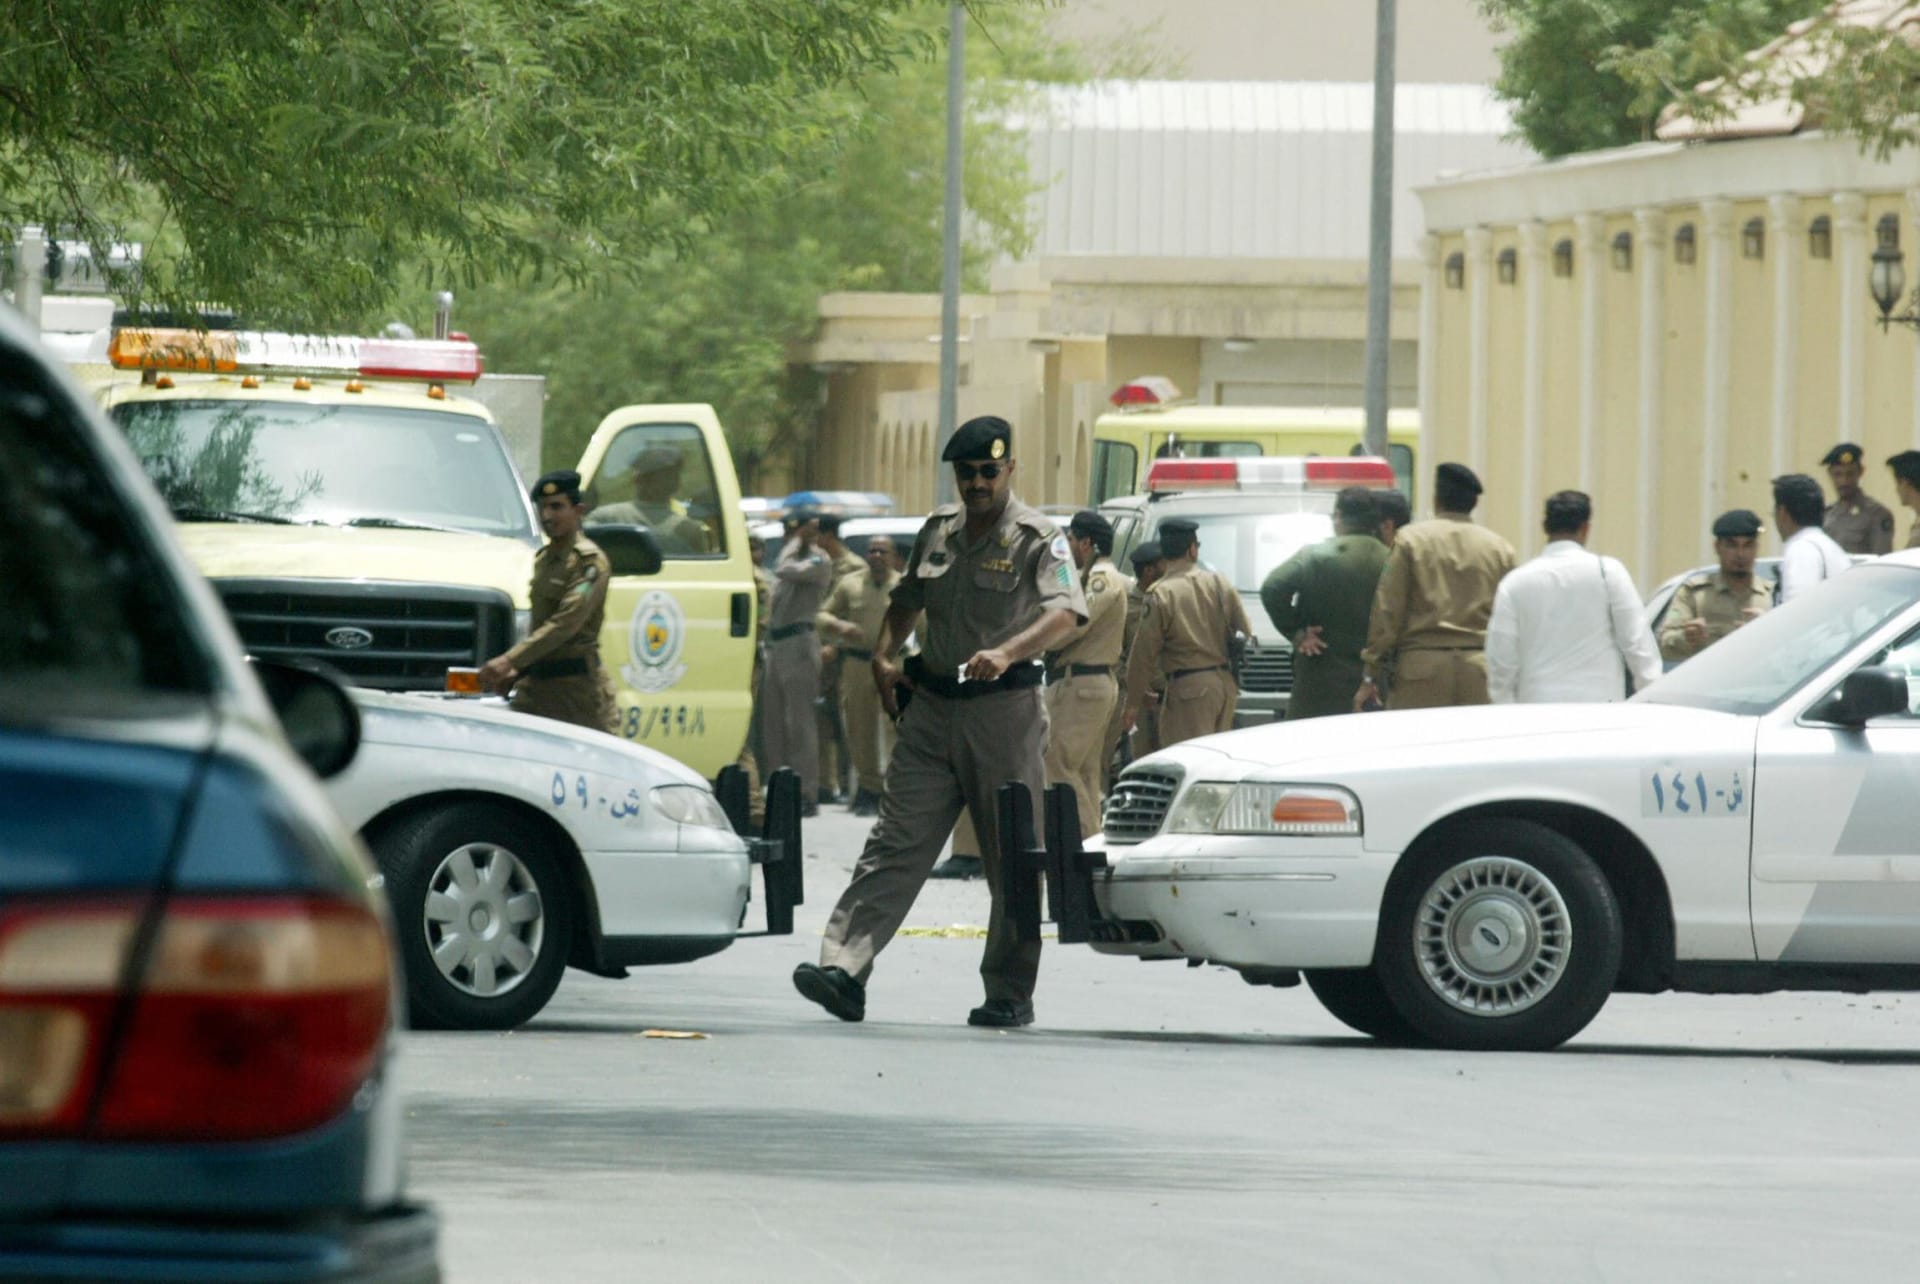 السعودية.. تنفيذ حكم القتل بمواطنين اشتركا بتكوين "خلية إرهابية" تستهدف قتل رجال الأمن